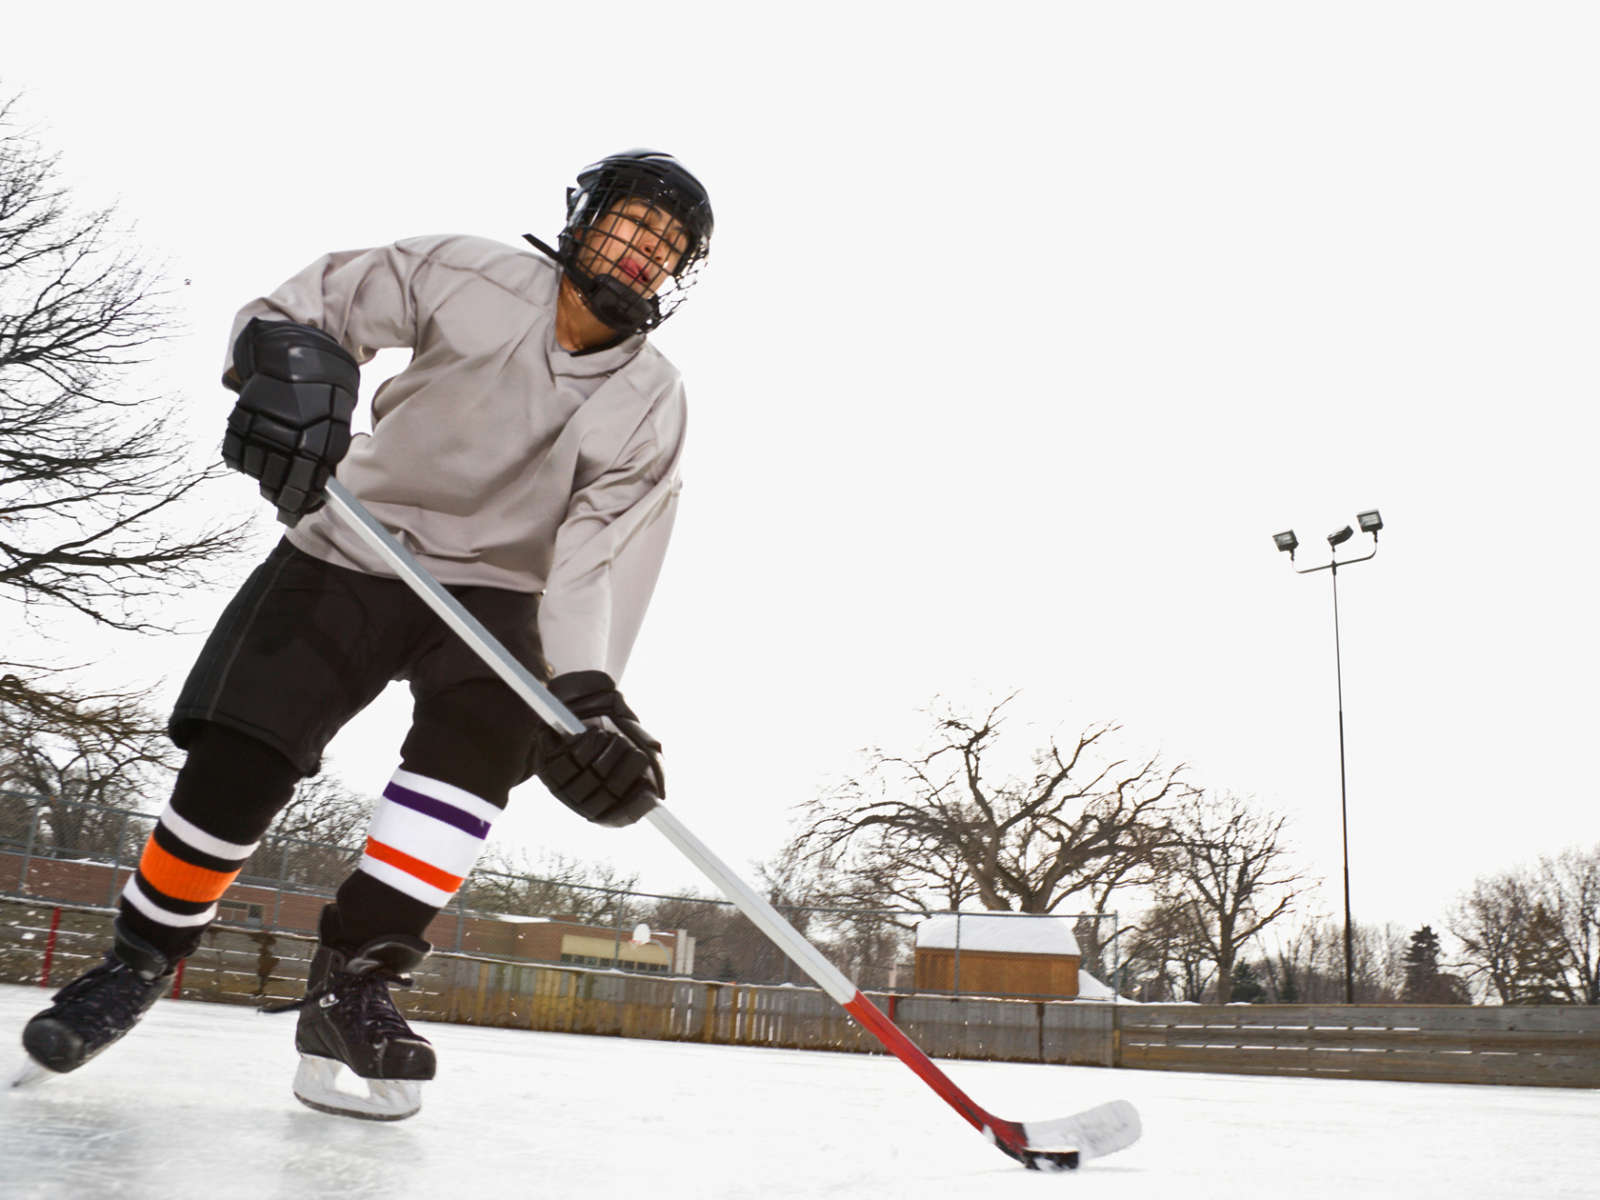 Kypärä on jääkiekkoilijan tärkein suojavaruste.